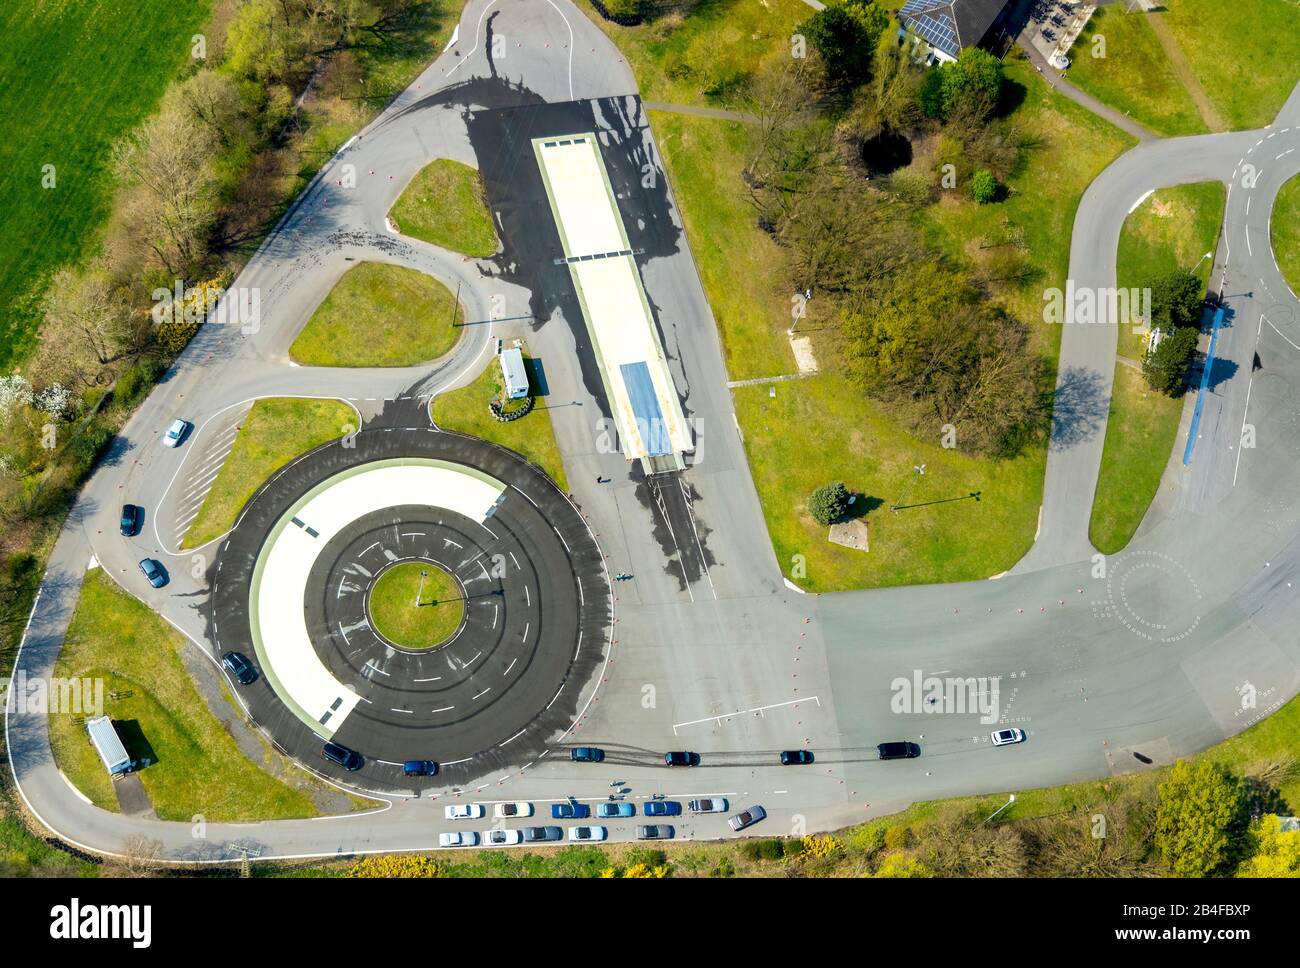 Vue aérienne du centre de sécurité routière de l'ADAC Haltern am See, cours de formation routière avec spin à Haltern am See dans la région de la Ruhr dans l'état de Rhénanie-du-Nord-Westphalie, Allemagne. Banque D'Images